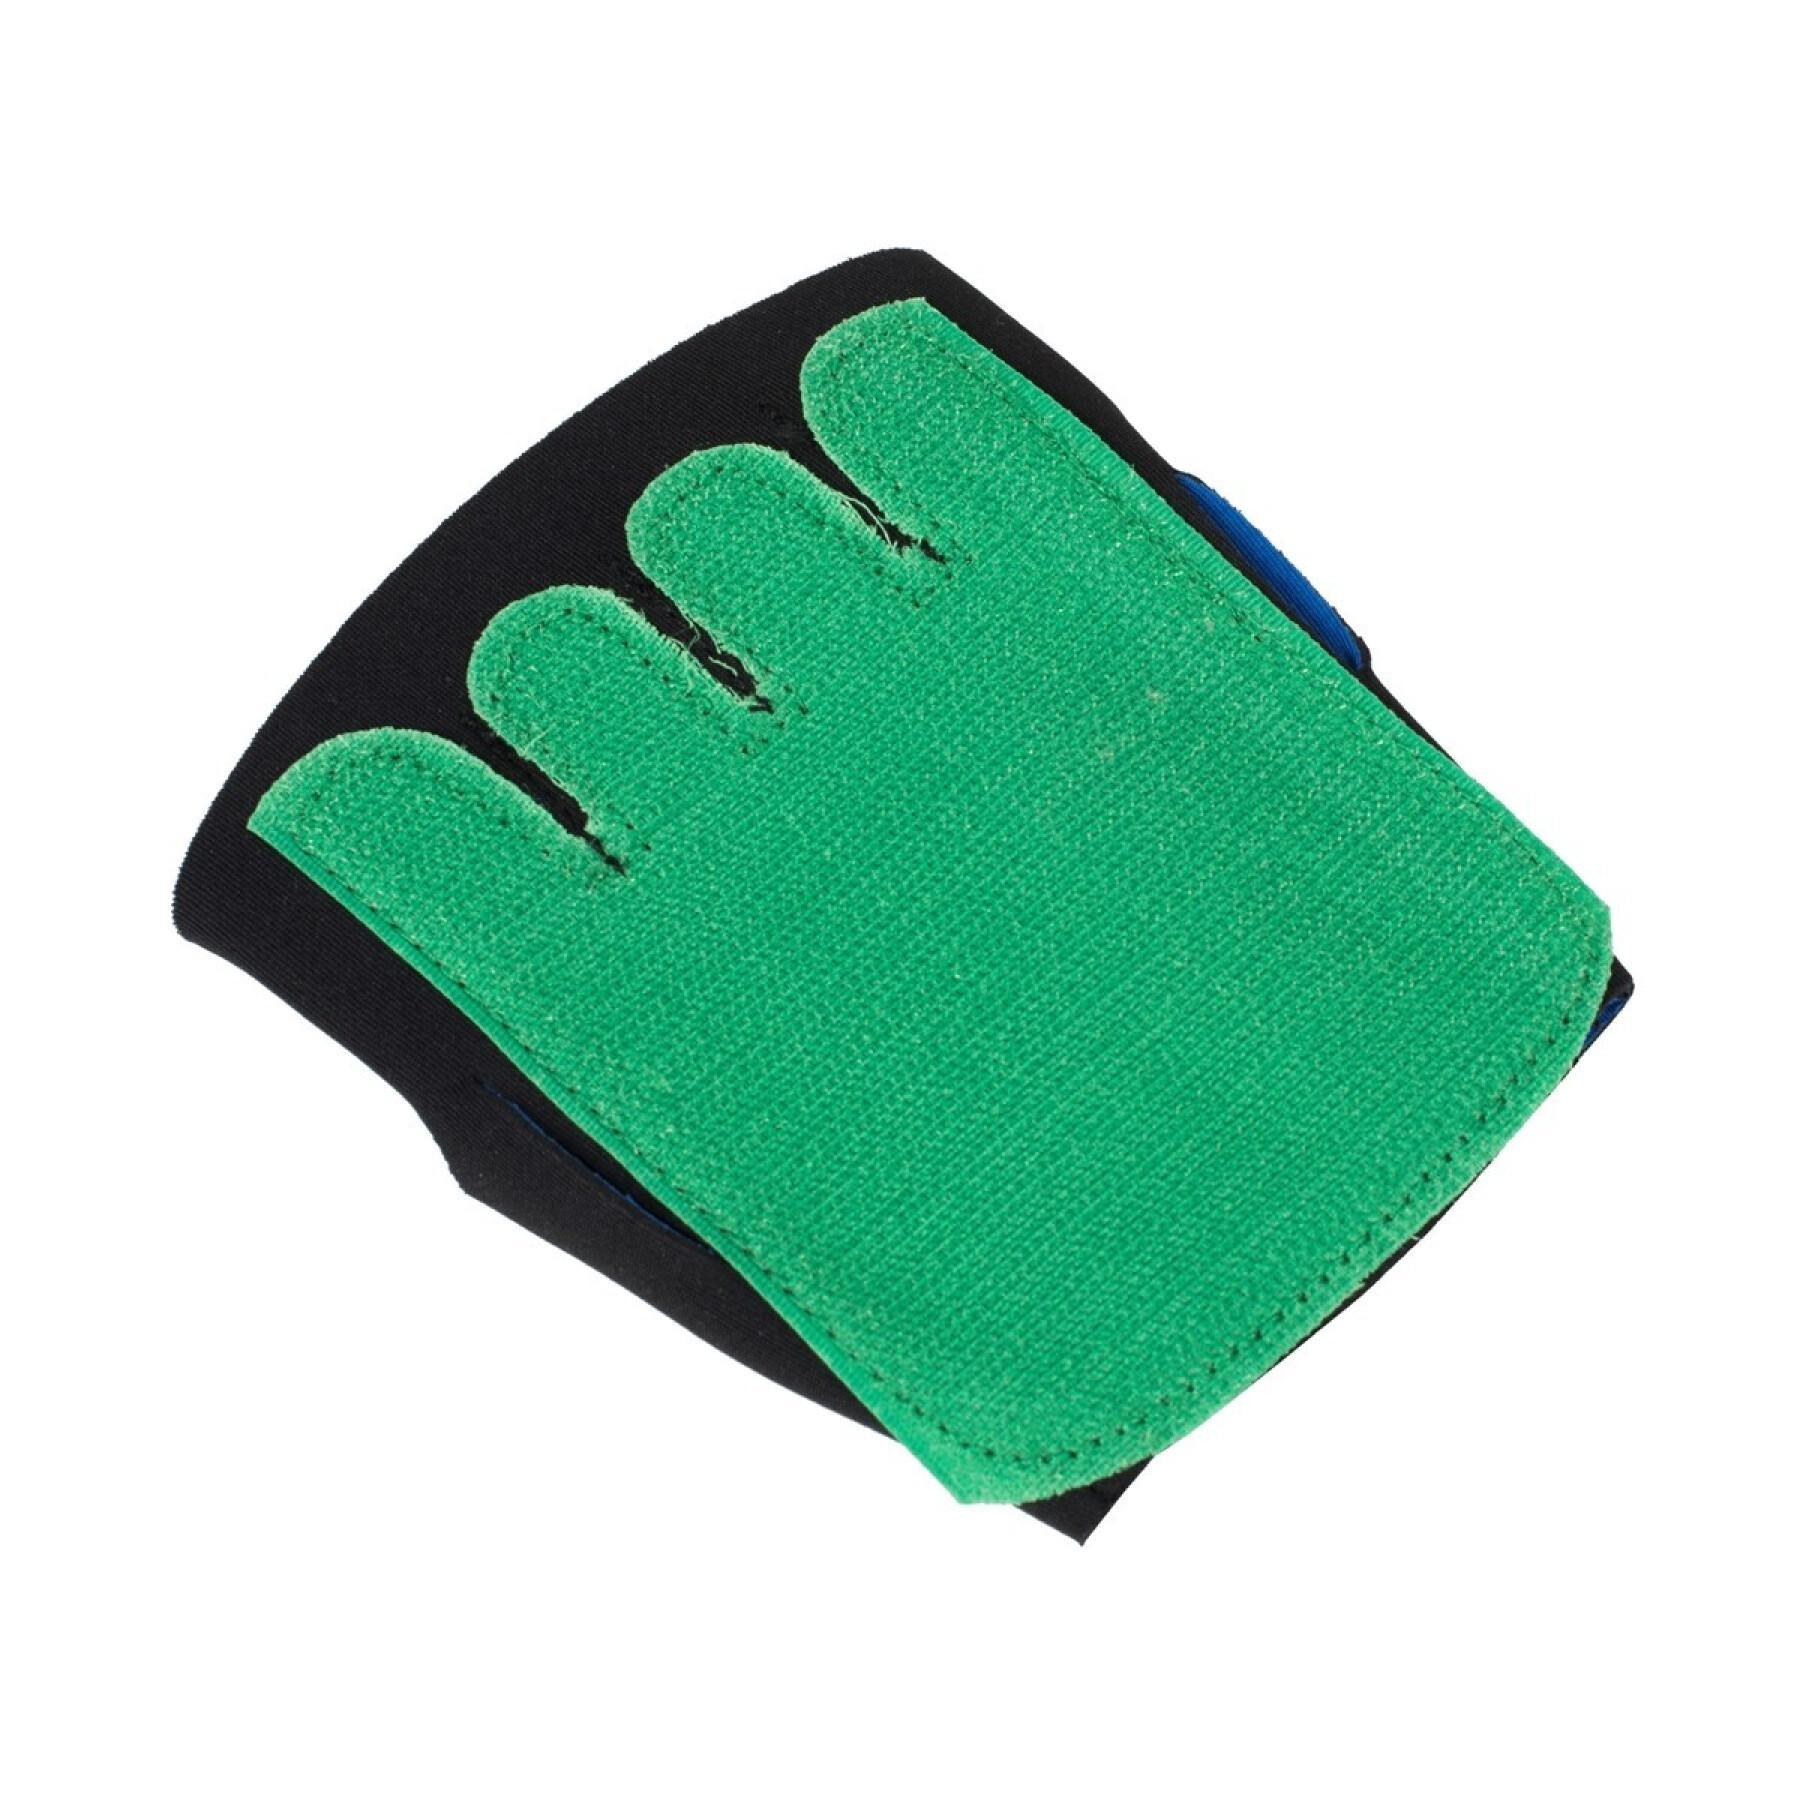 Velcro gloves Spordas Super Catch